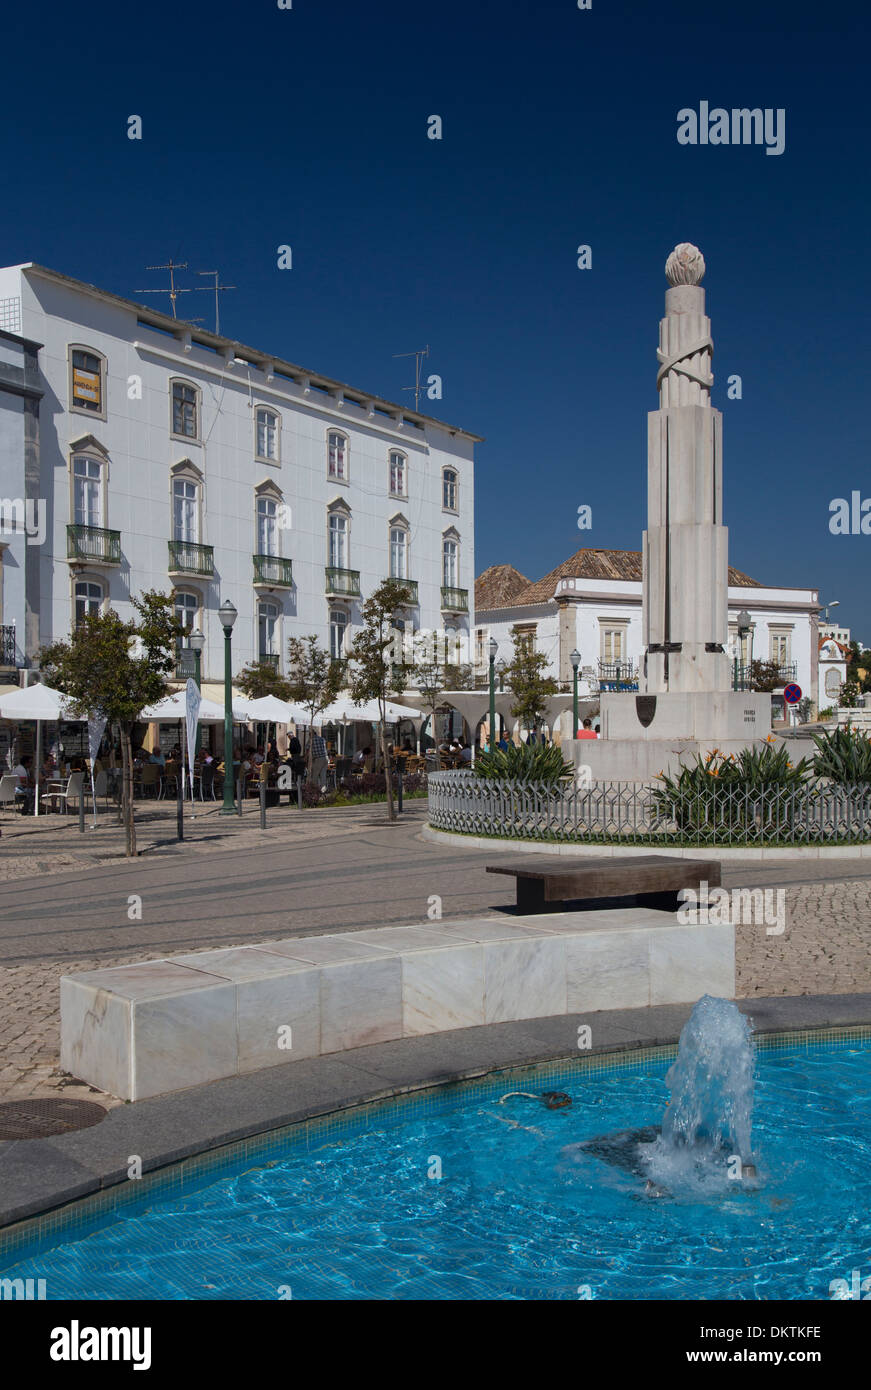 Monumento ai caduti in guerra in Piazza della Repubblica, Tavira, Algarve, PORTOGALLO Foto Stock